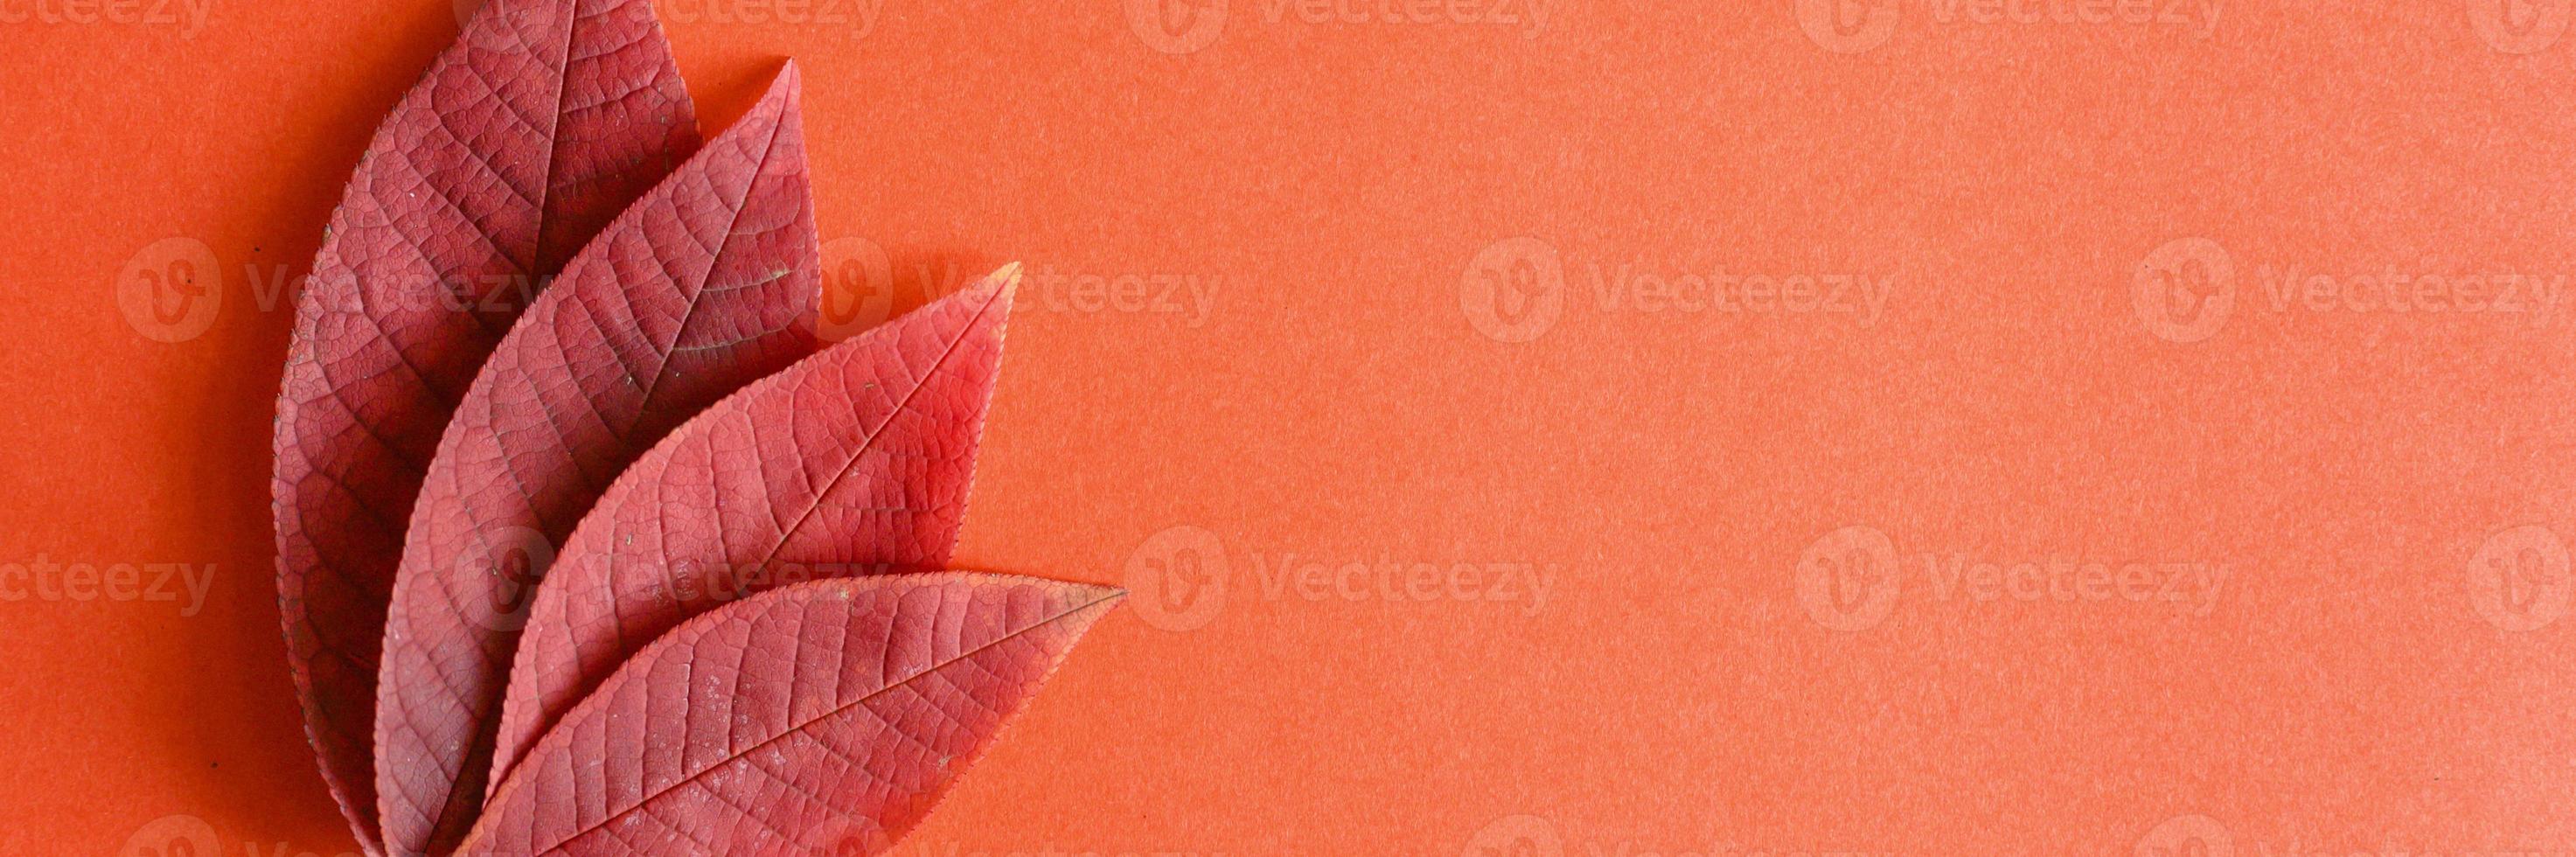 Hojas de cerezo de otoño caídas rojas sobre un fondo de papel rojo foto